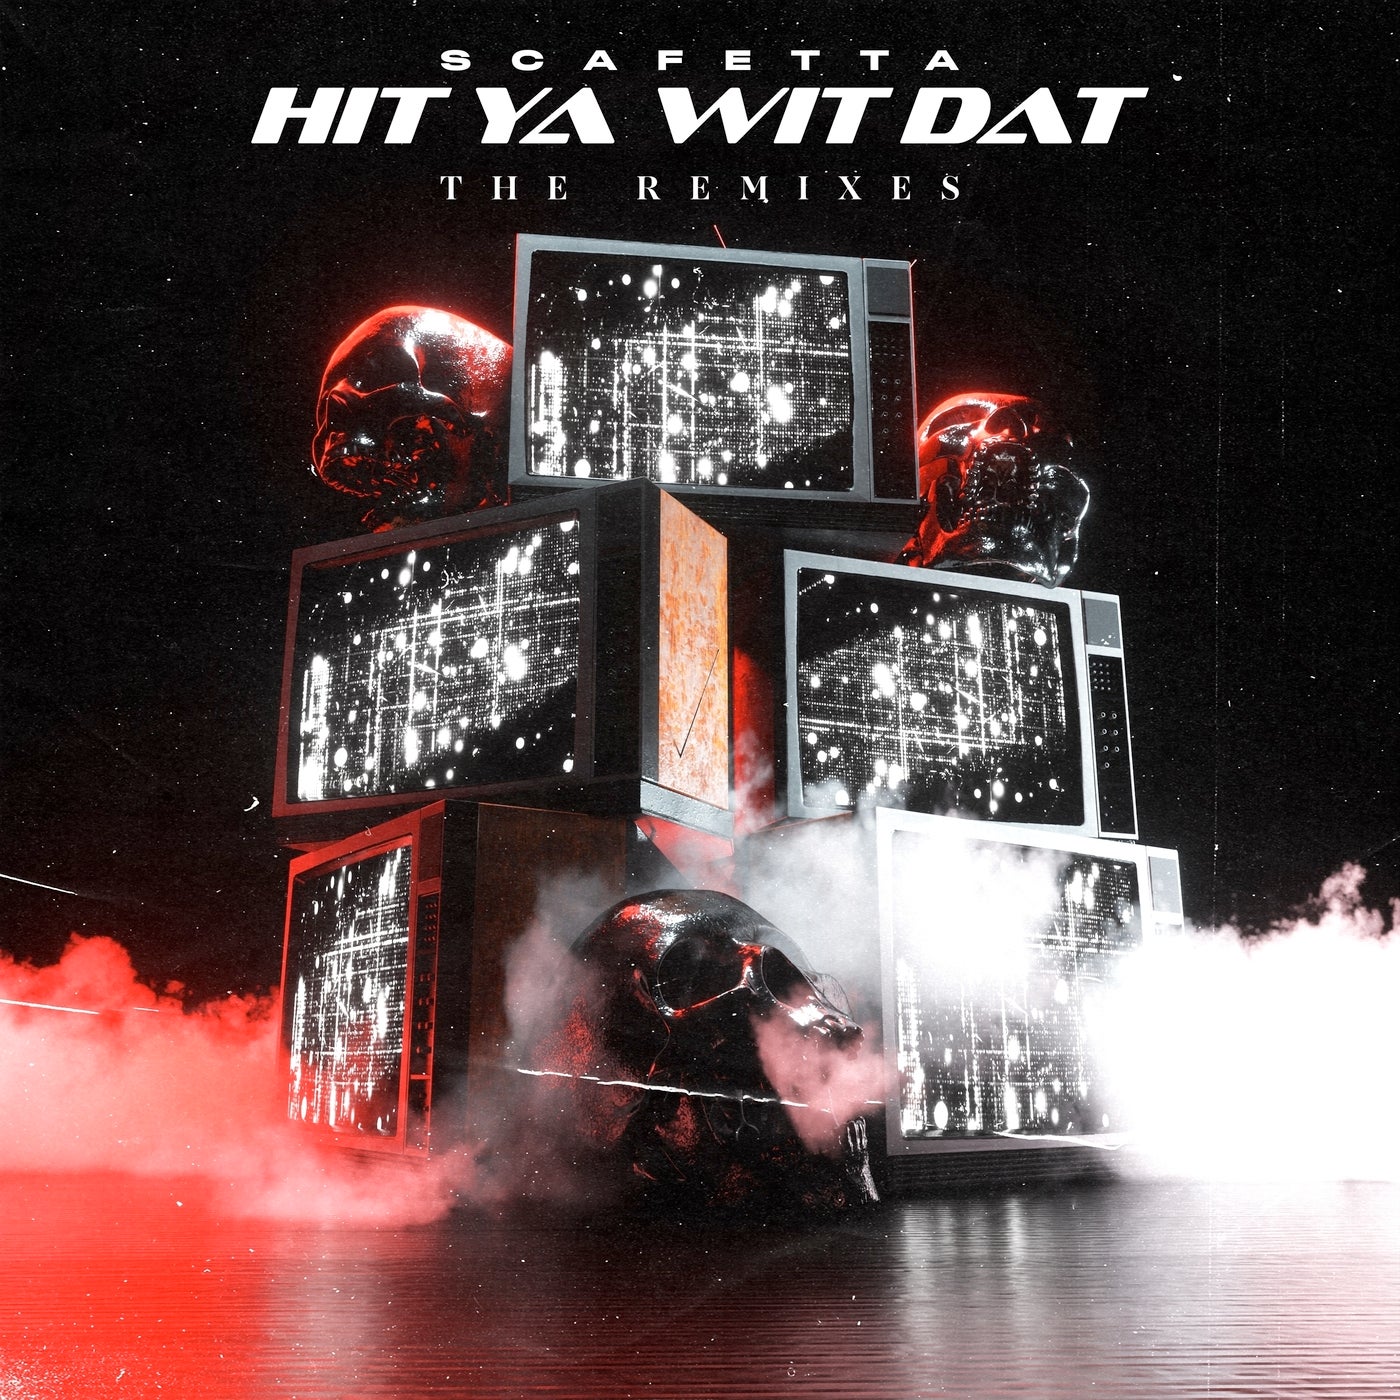 Hit Ya Wit Dat (The Remixes)